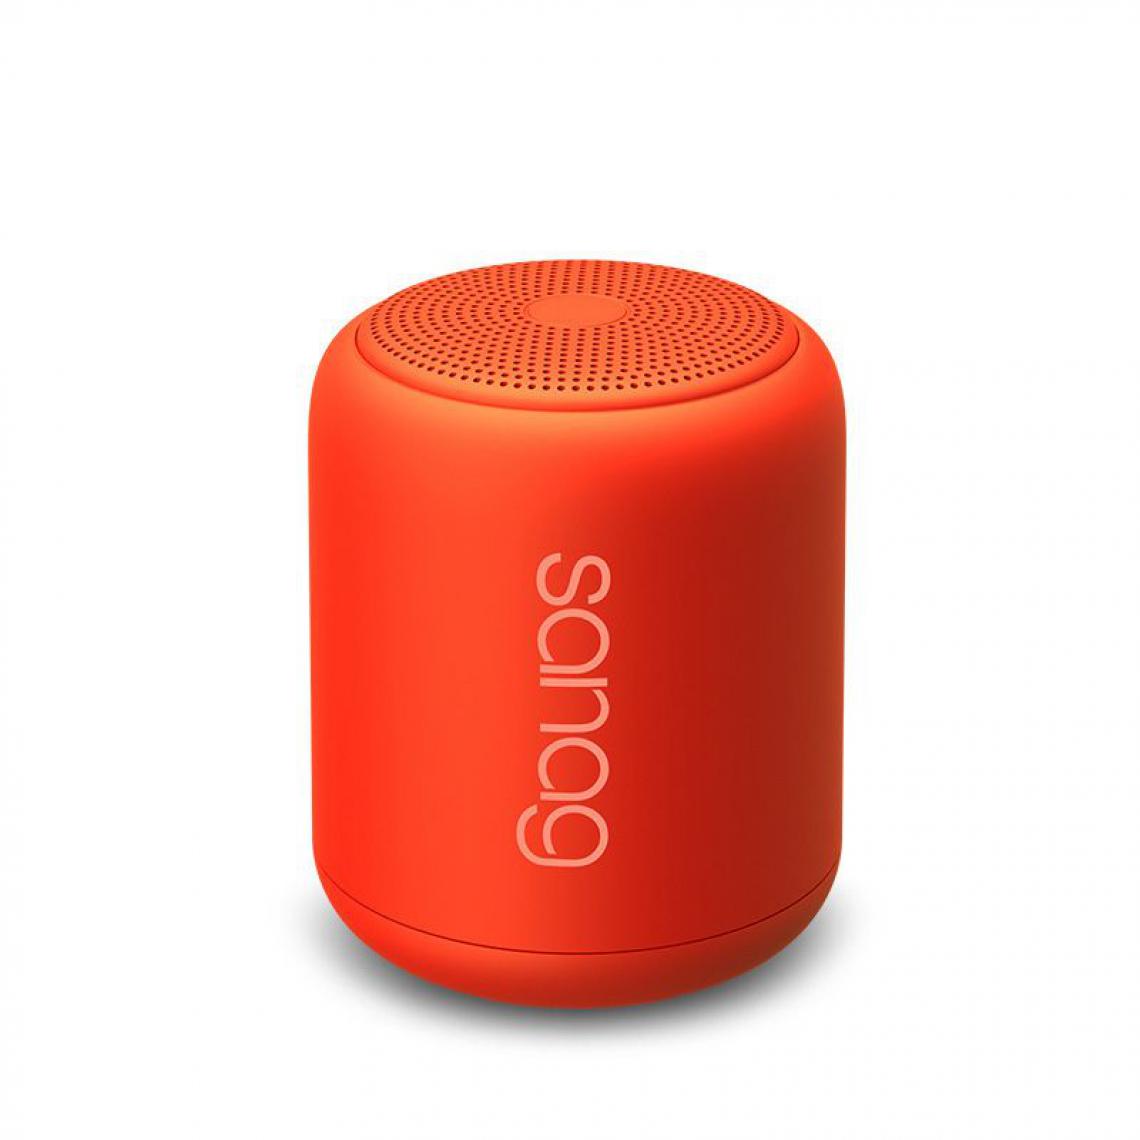 Generic -  Haut-parleur Portable SanagX6S , Sans fil Bluetooth avec  caisson de basses étanche  et  carte TF numérique , Compatible avec Android, iPhone et Ordinateurs Portable  ,  7.5  * 8.8 cm  - Orange  - Hauts-parleurs